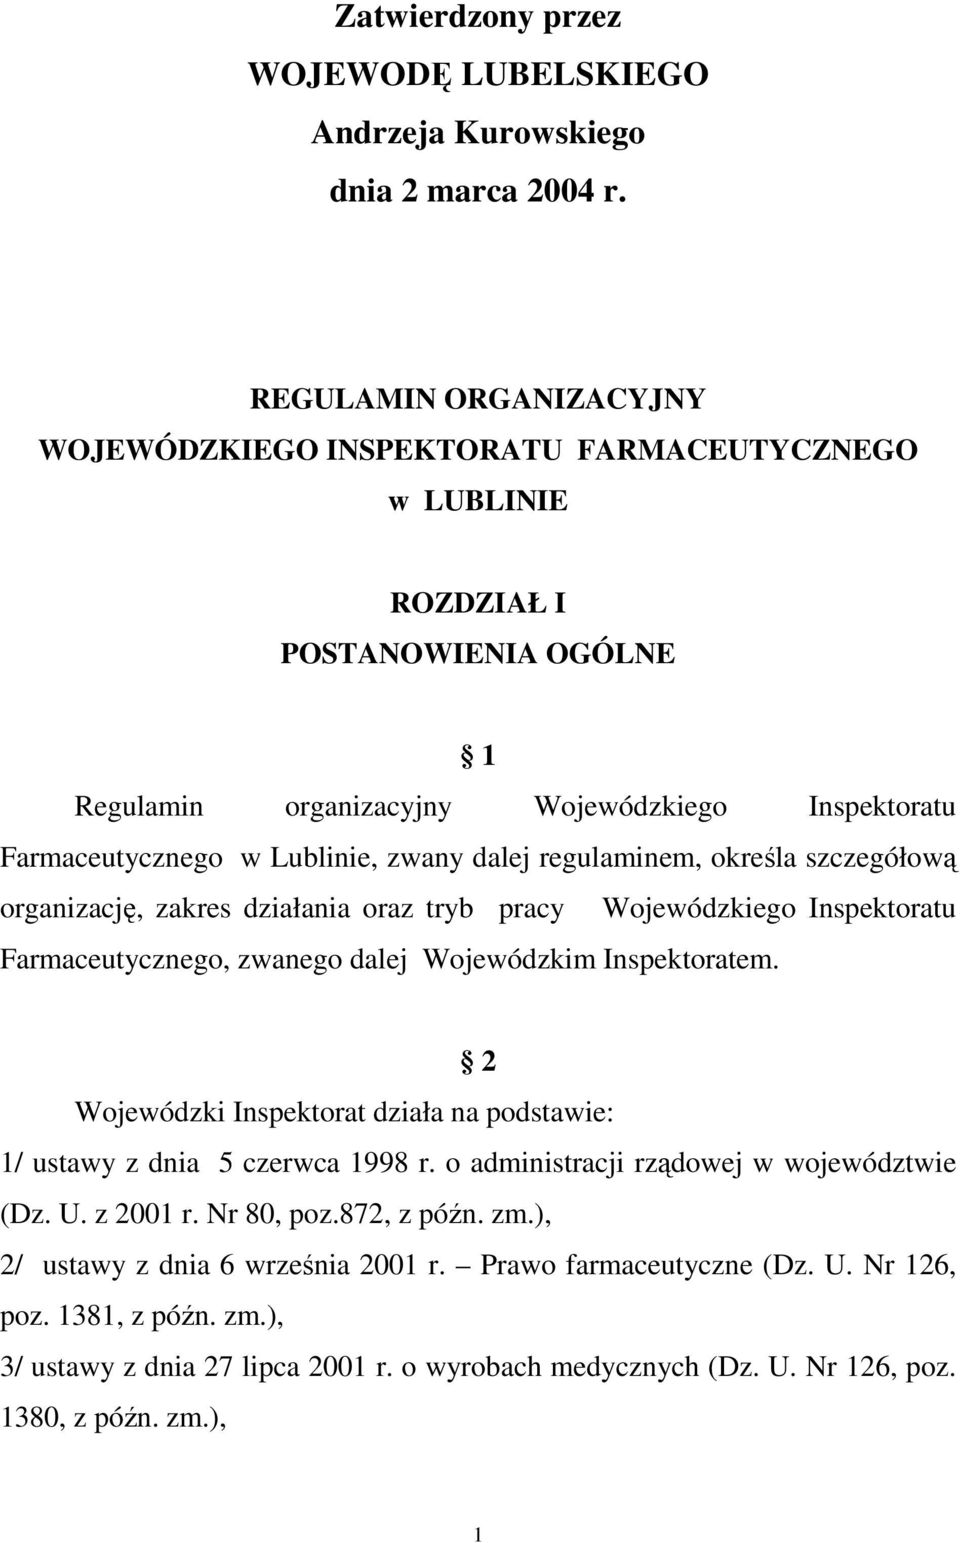 dalej regulaminem, określa szczegółową organizację, zakres działania oraz tryb pracy Wojewódzkiego Inspektoratu Farmaceutycznego, zwanego dalej Wojewódzkim Inspektoratem.